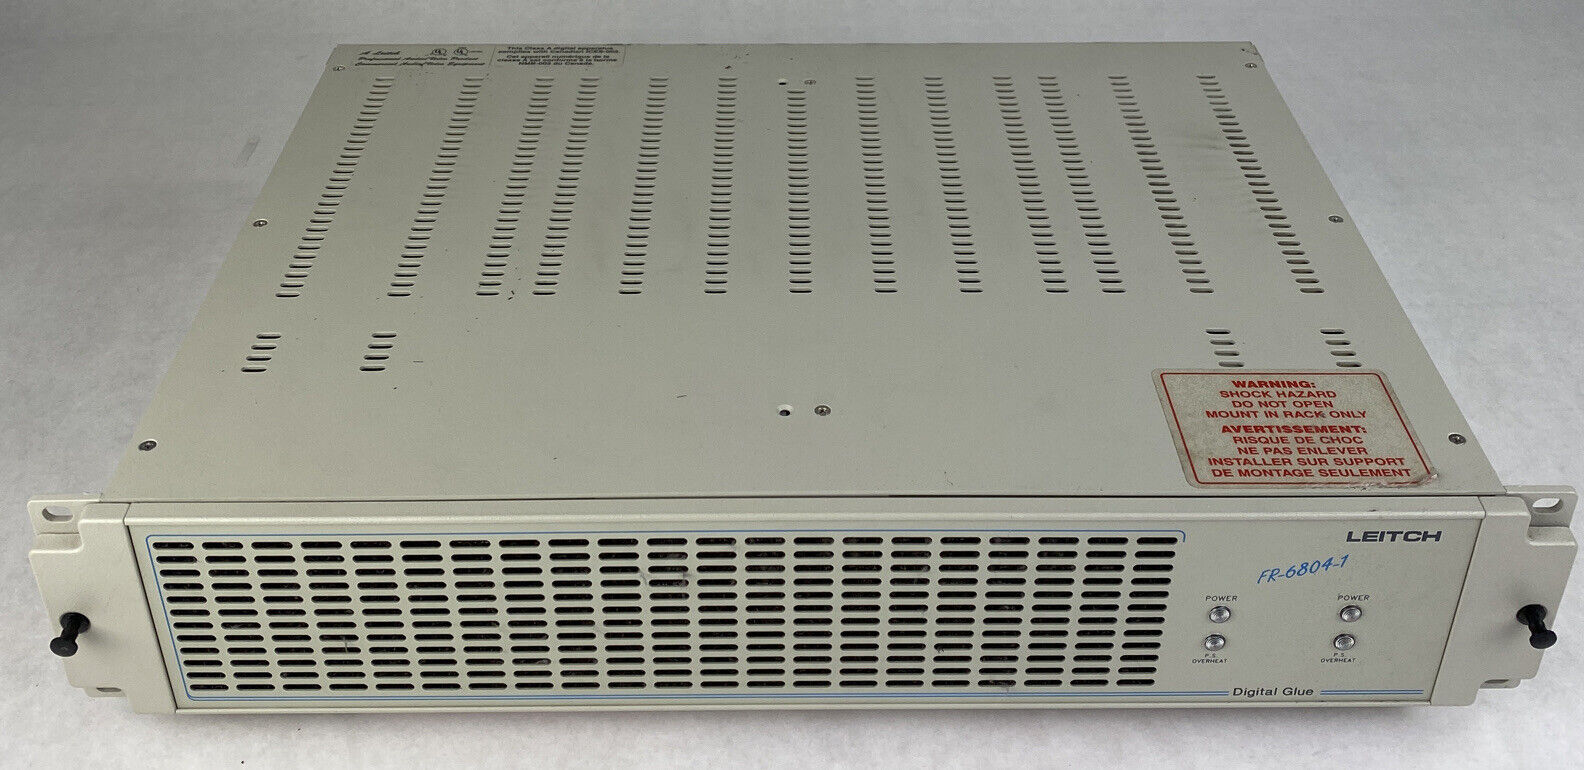 10x Leitch DEC-6801 decoder cards inside Leitch FR-6804-1 digital glue